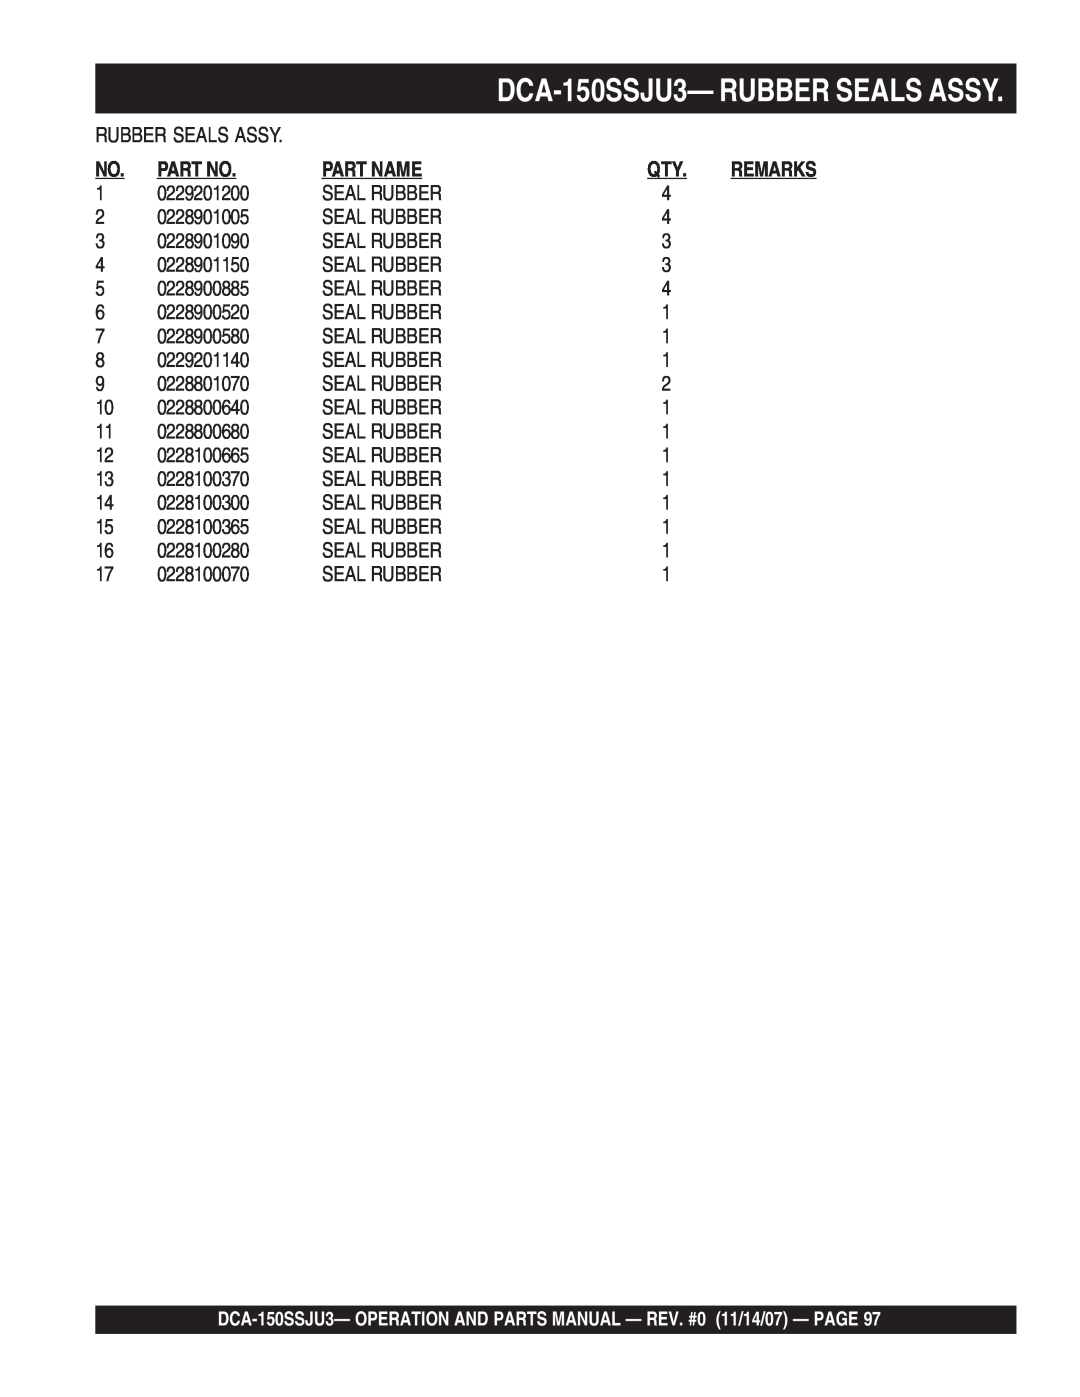 Multiquip operation manual DCA-150SSJU3-RUBBER SEALS ASSY, Part No, Part Name, 0229201200 